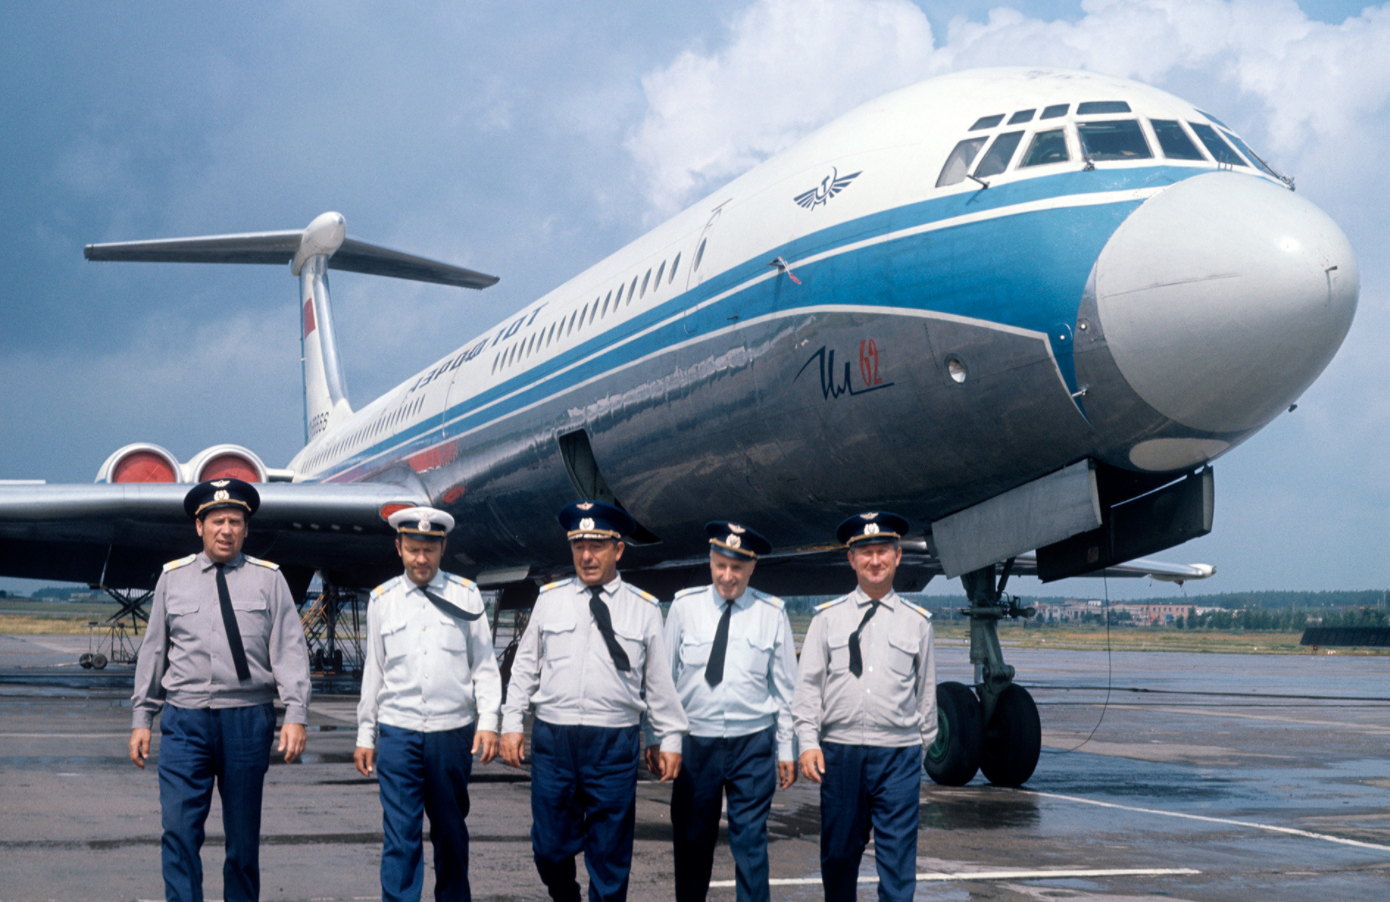 Posadka letala Il-62 na moskovskem letališču Domodedovo

